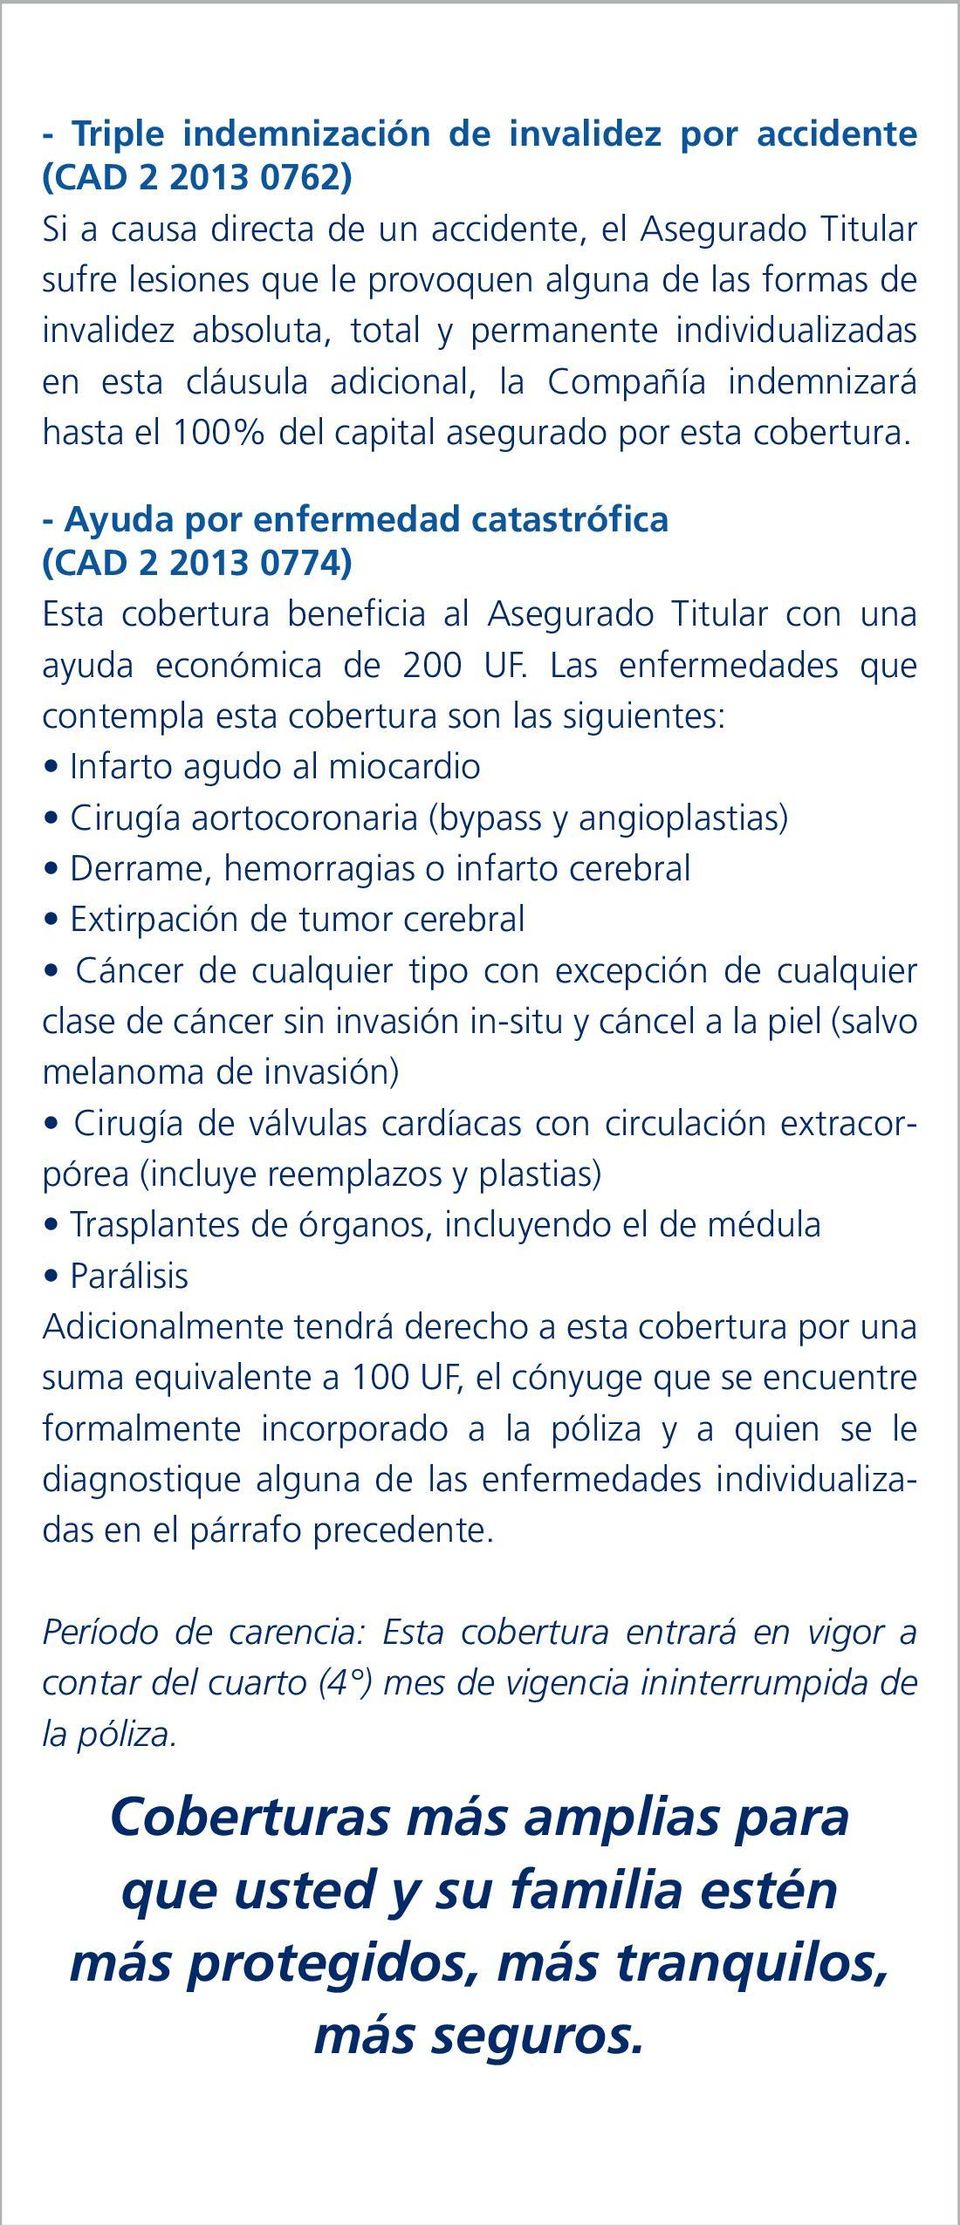 - Ayuda por enfermedad catastrófica (CAD 2 2013 0774) Esta cobertura beneficia al Asegurado Titular con una ayuda económica de 200 UF.